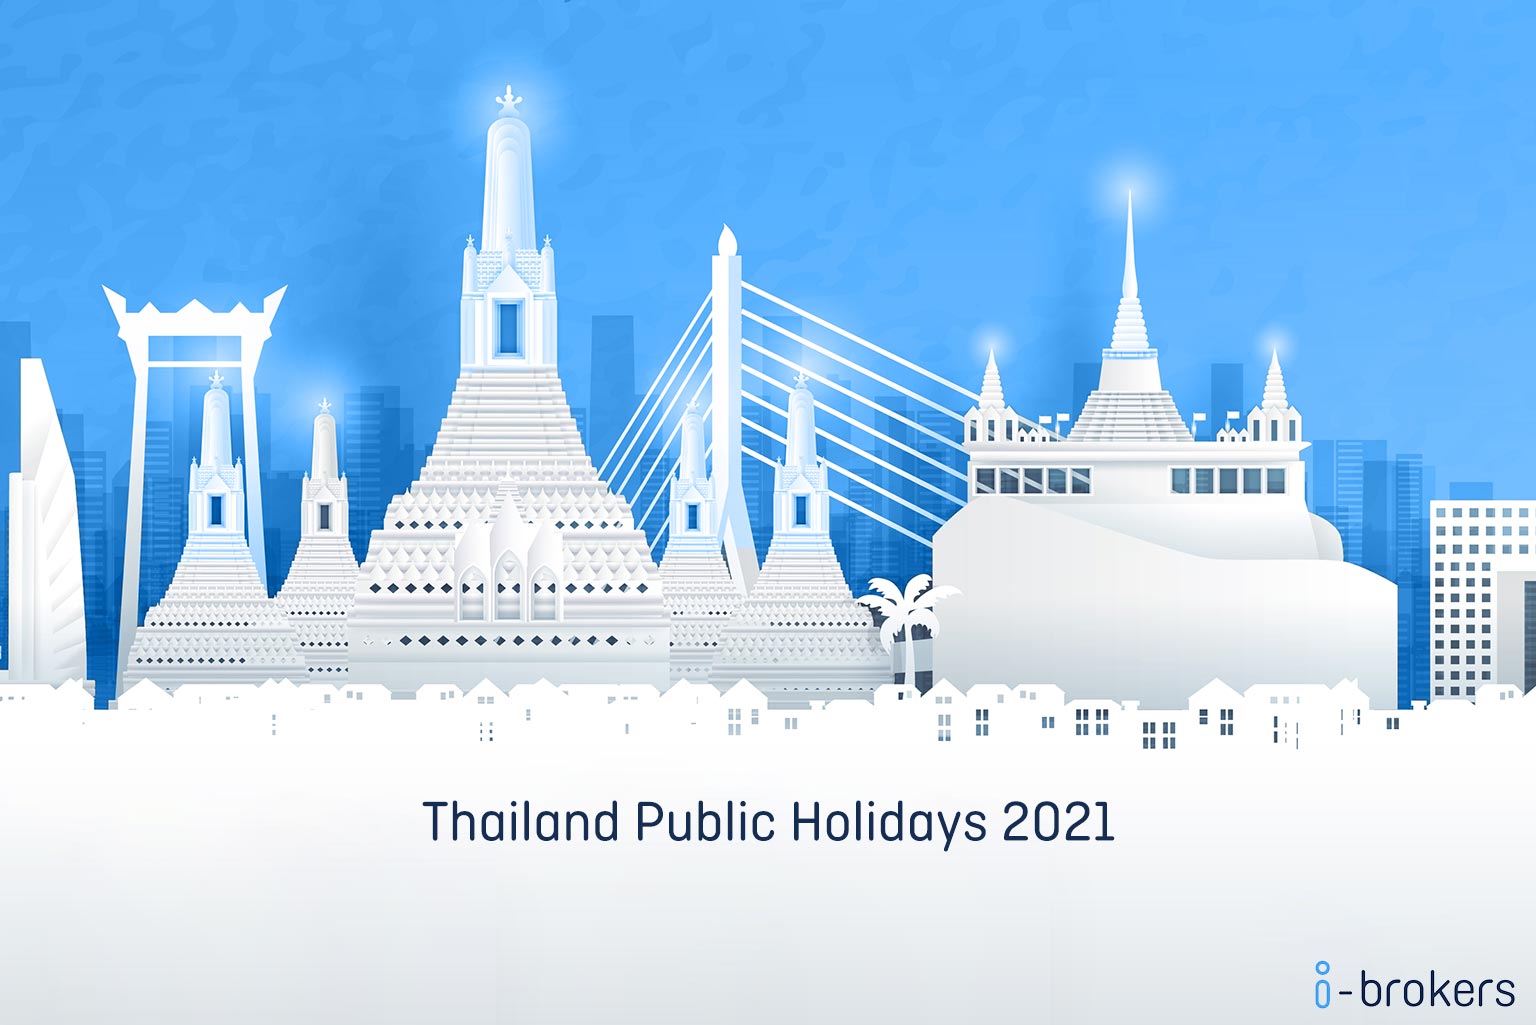 Thailand public